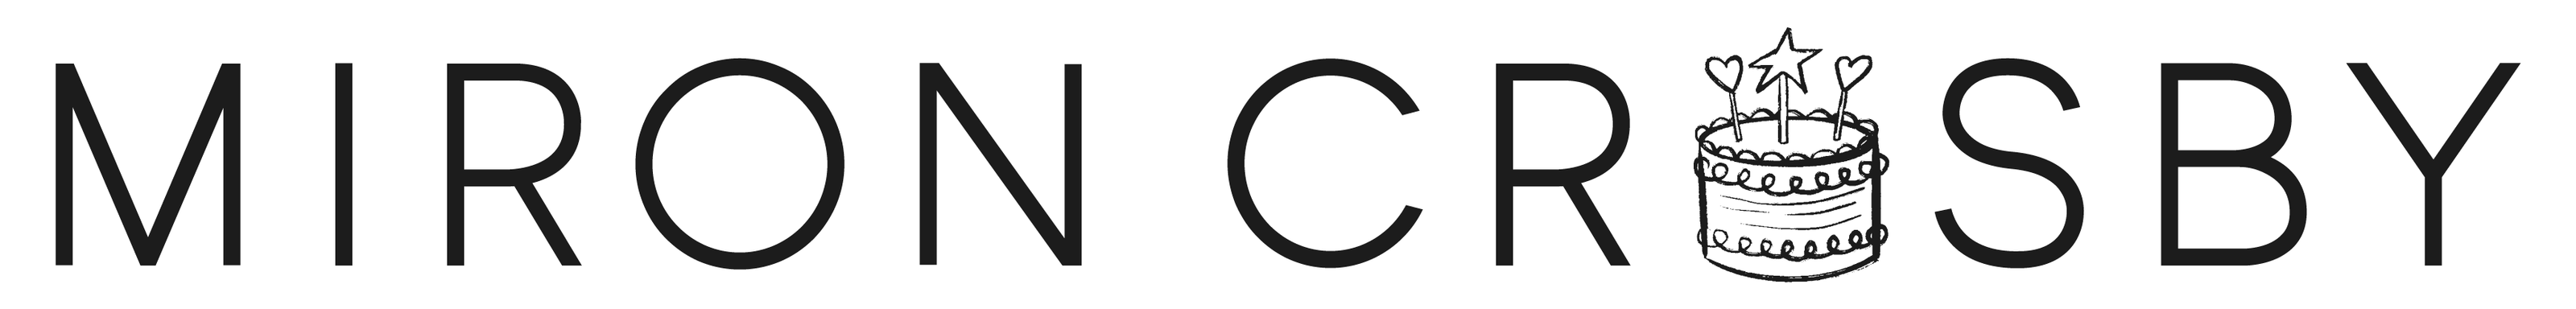 MC Birthday Logo | Miron Crosby